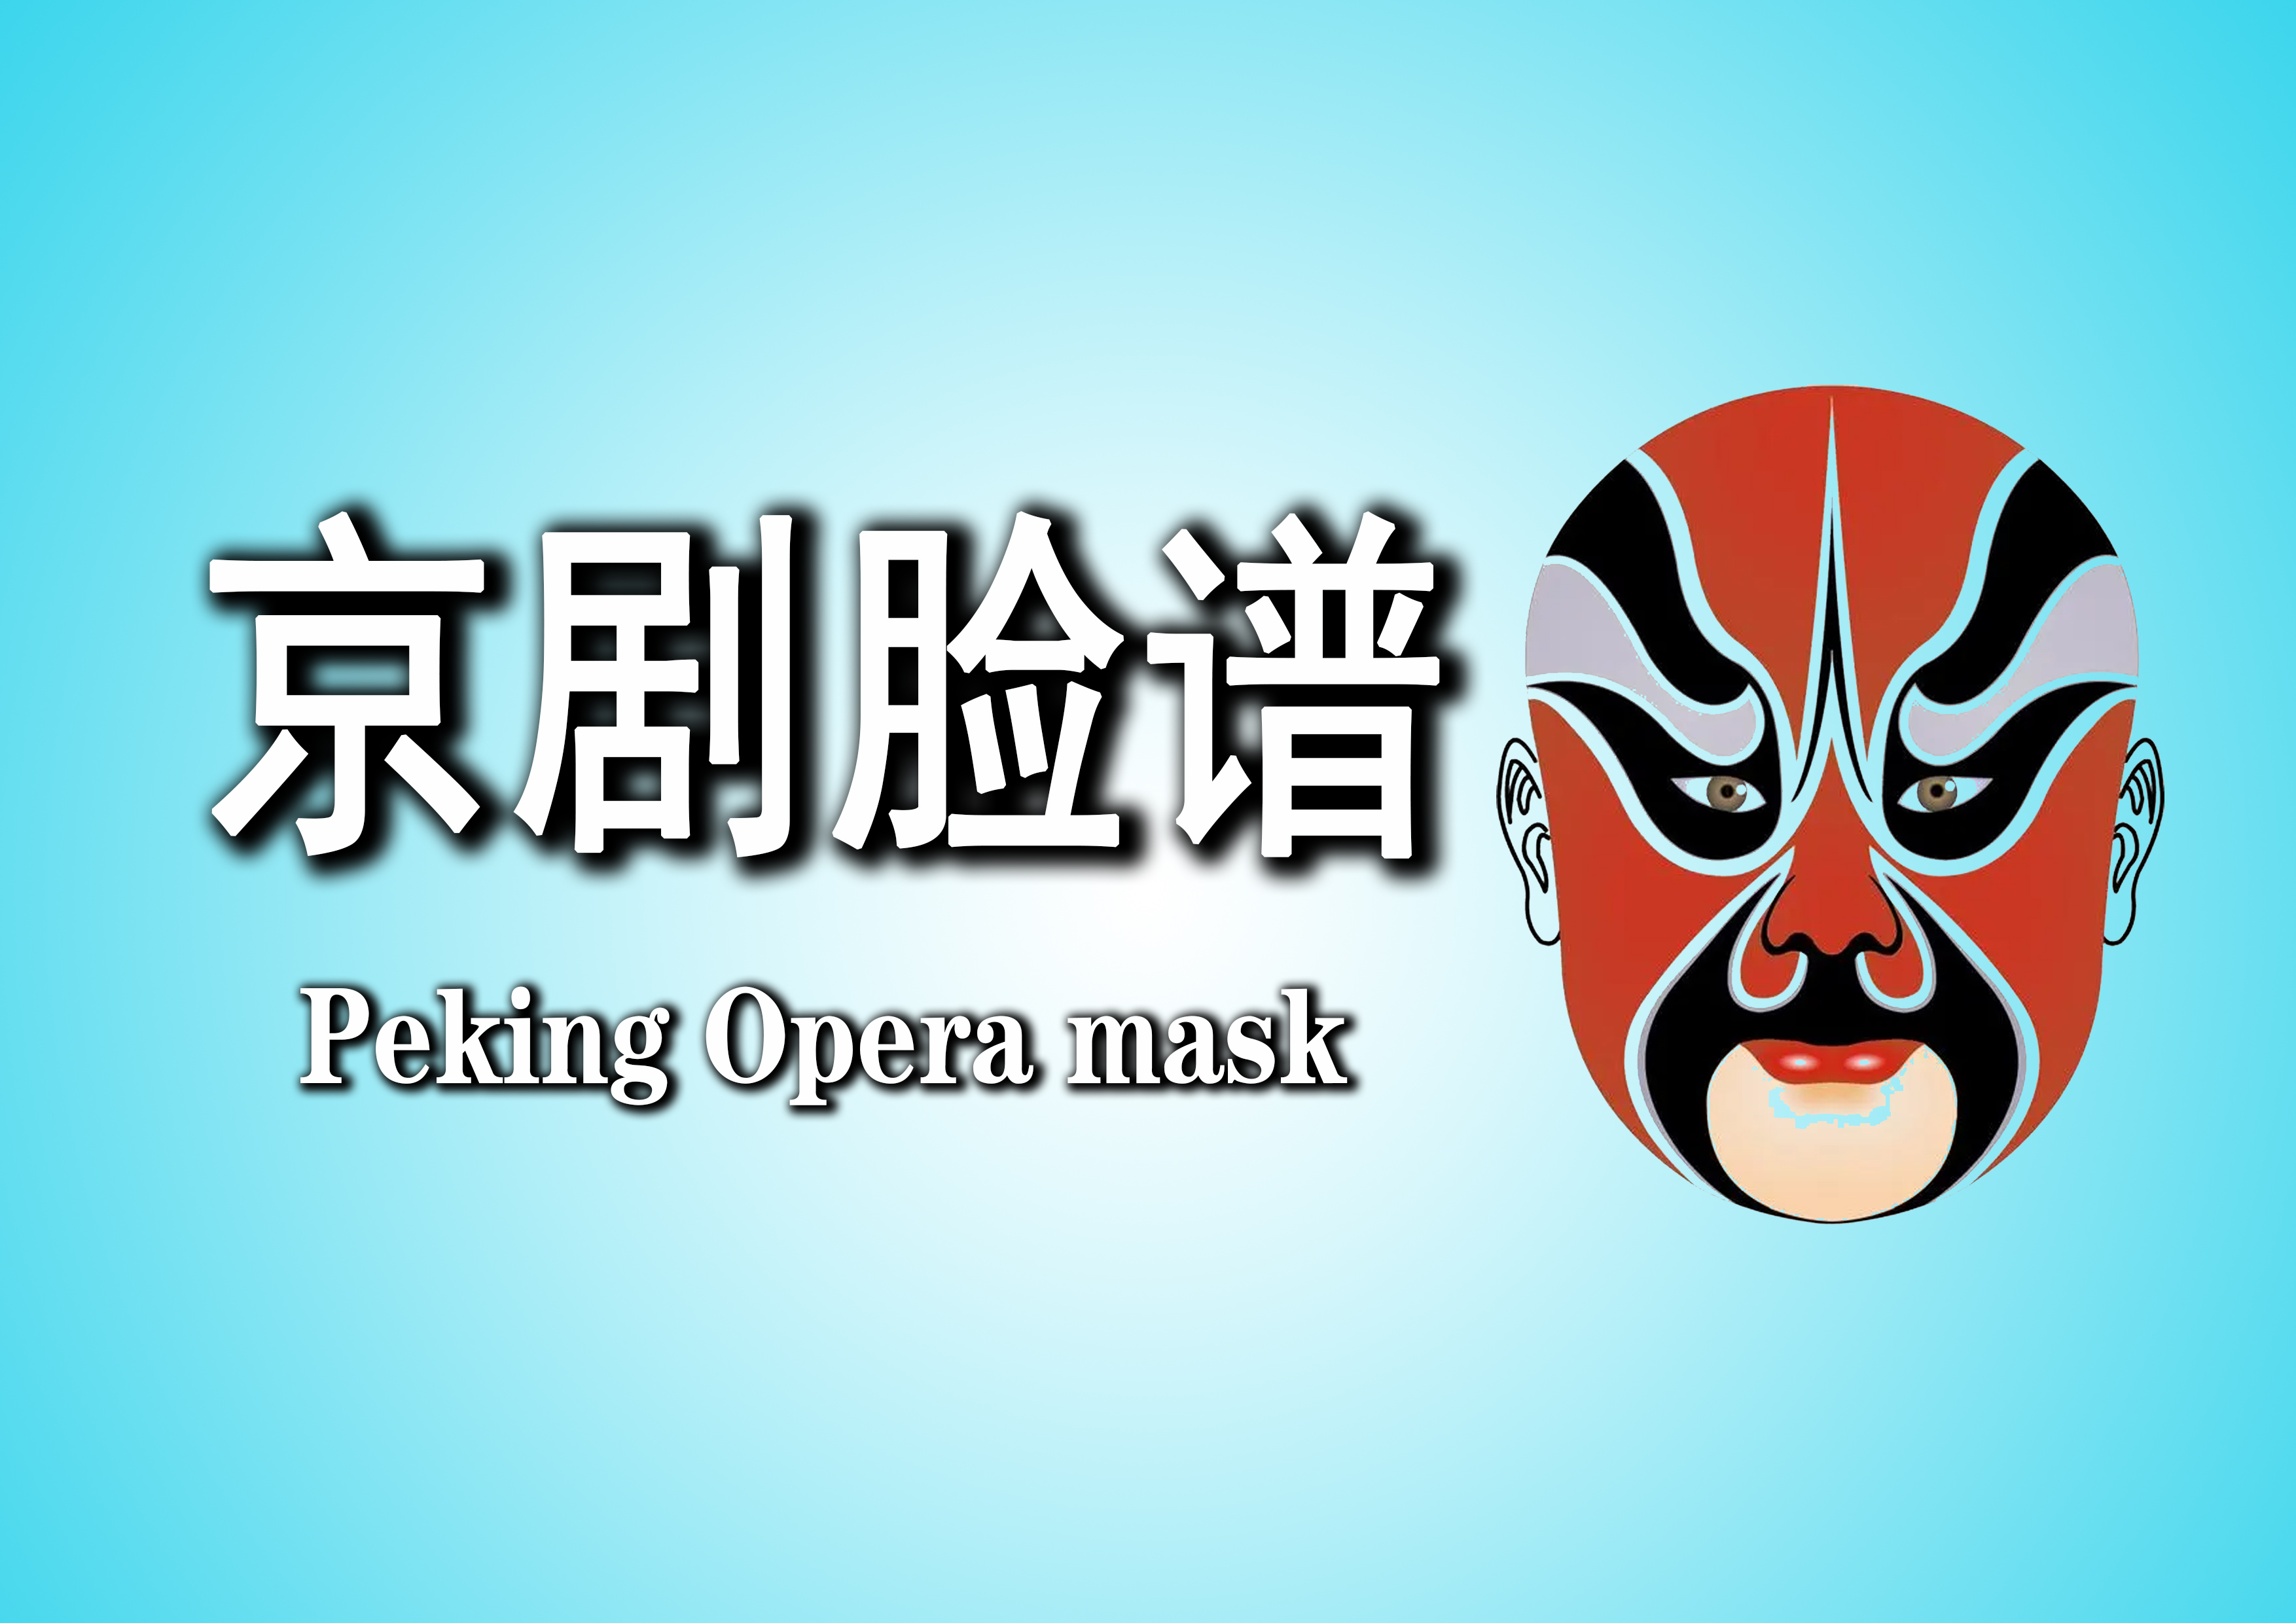 Peking Opera mask